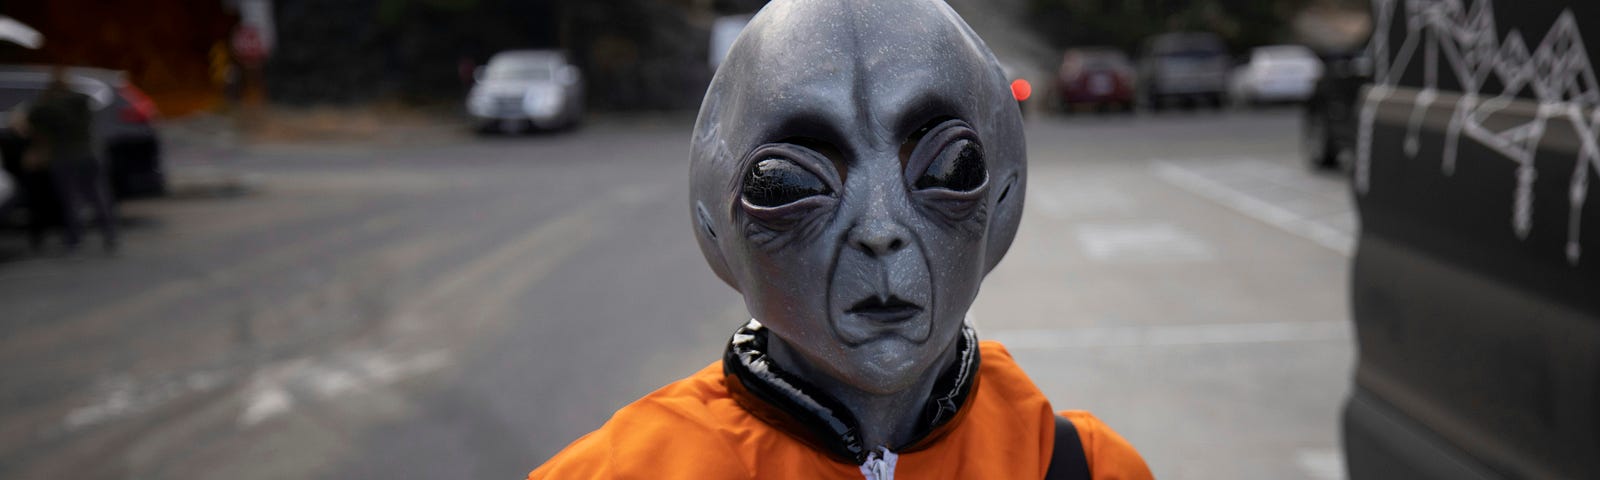 space alien in a fine orange jacket